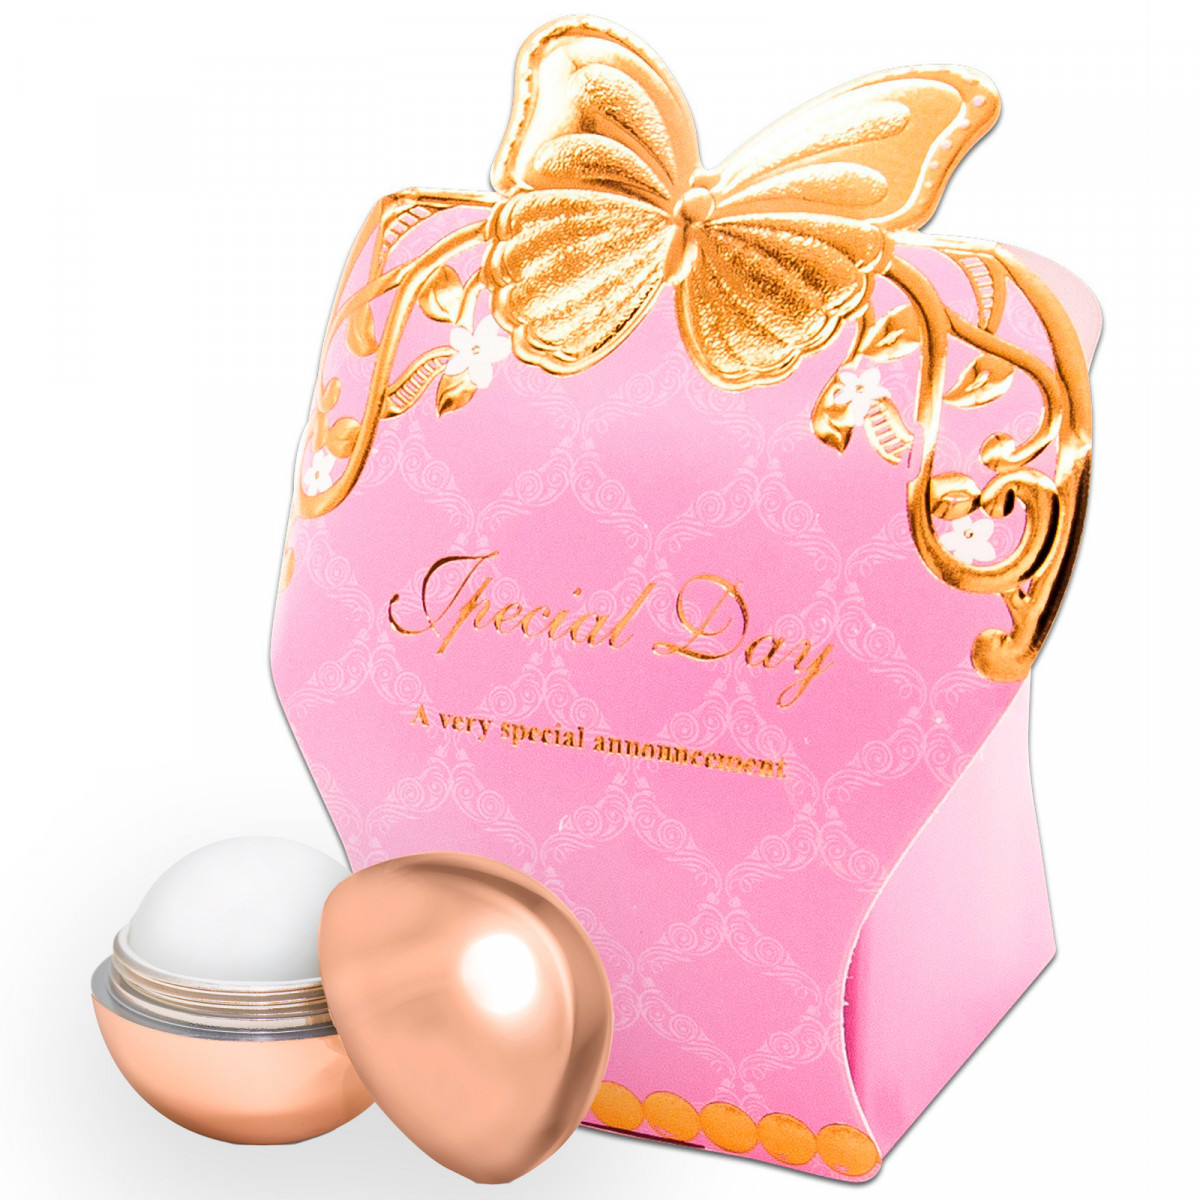 Brillant à lèvres avec facteur de protection dans une boîte décorative rose